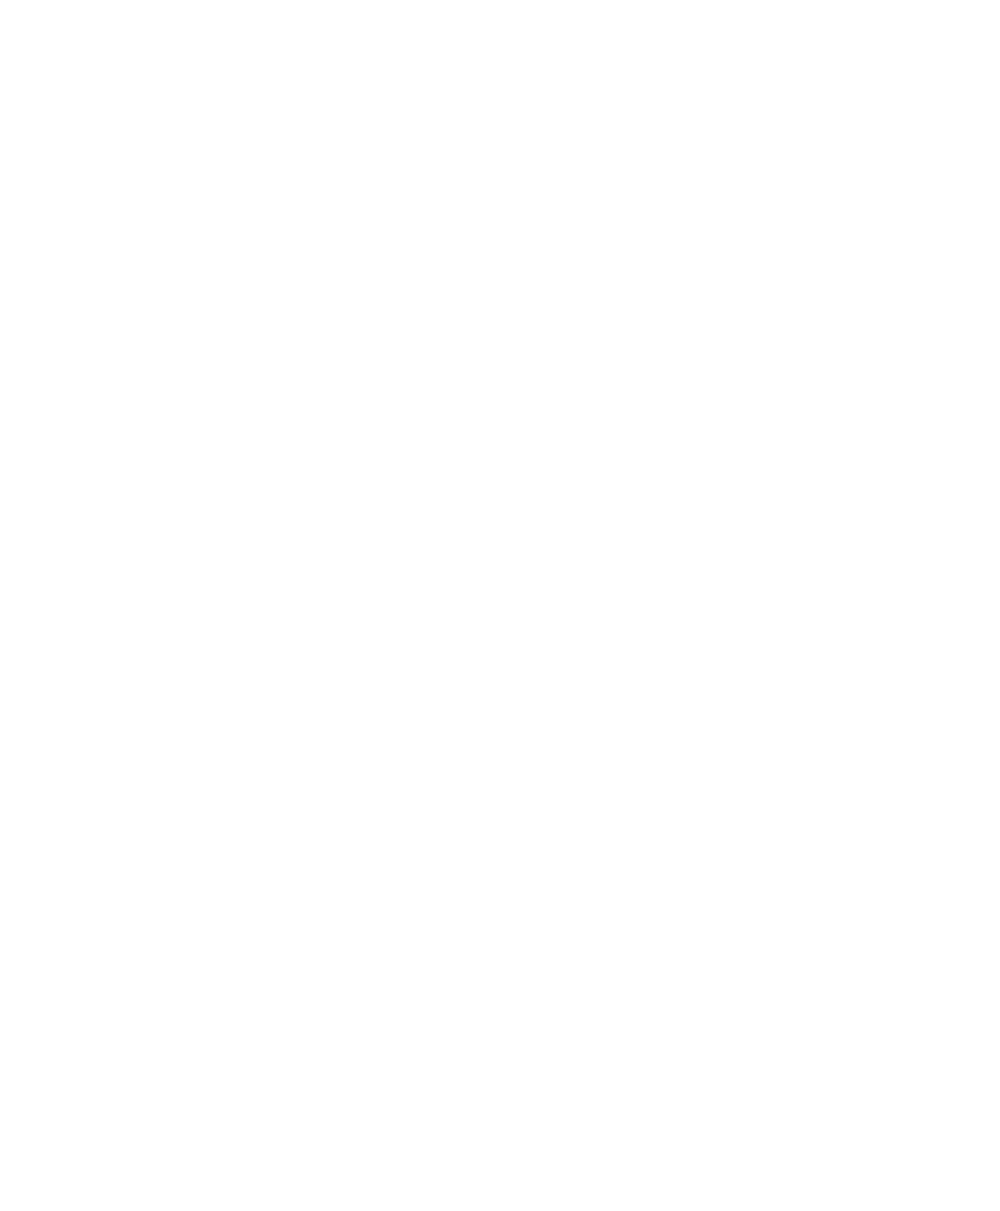 20th Anniversary WORLD FRESHWATER AQUARIUM 心からの“感謝”アクア・トト ぎふの20周年